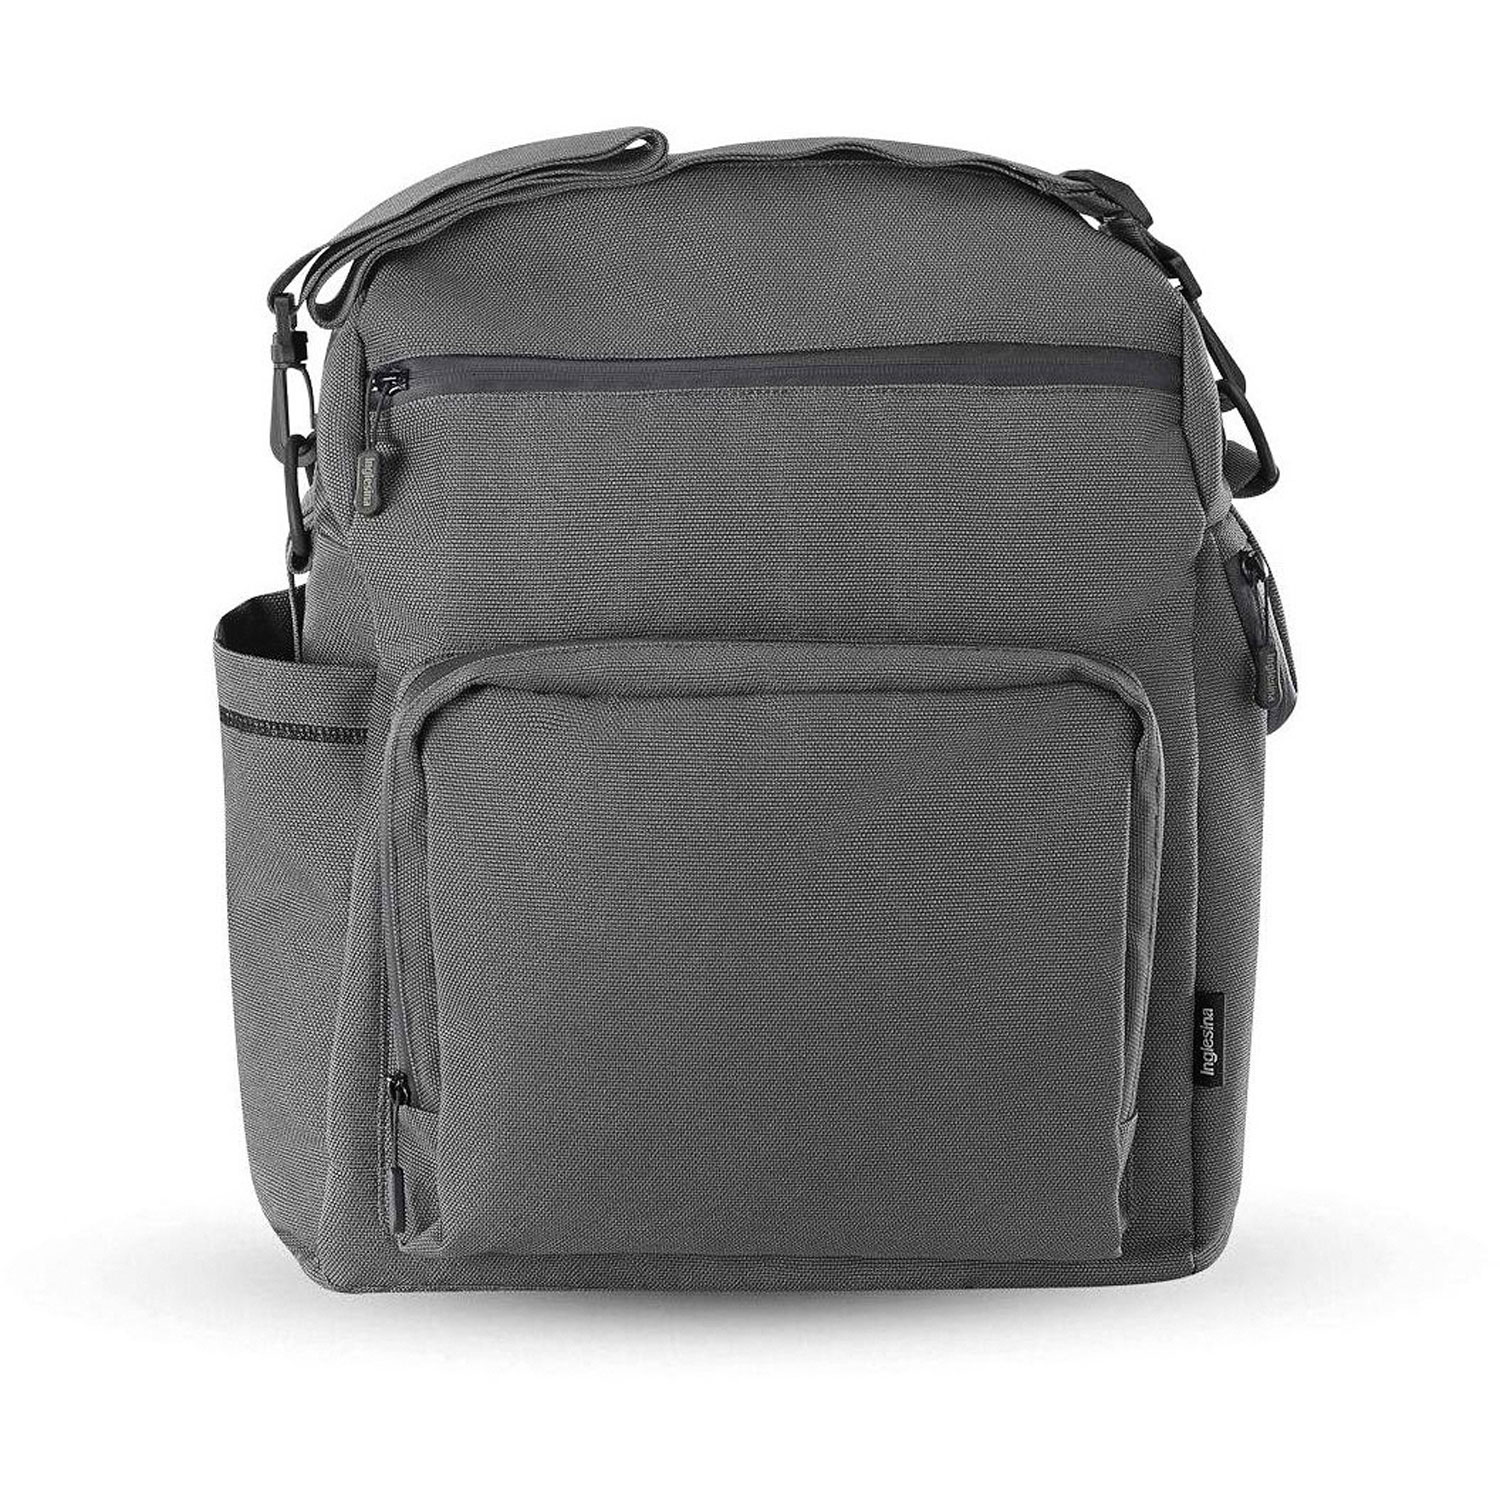 Сумка-рюкзак для коляски ADVENTURE BAG, цвет CHARCOAL GREY (2021) Inglesina сумка для коляски inglesina electa element bag pure ecru